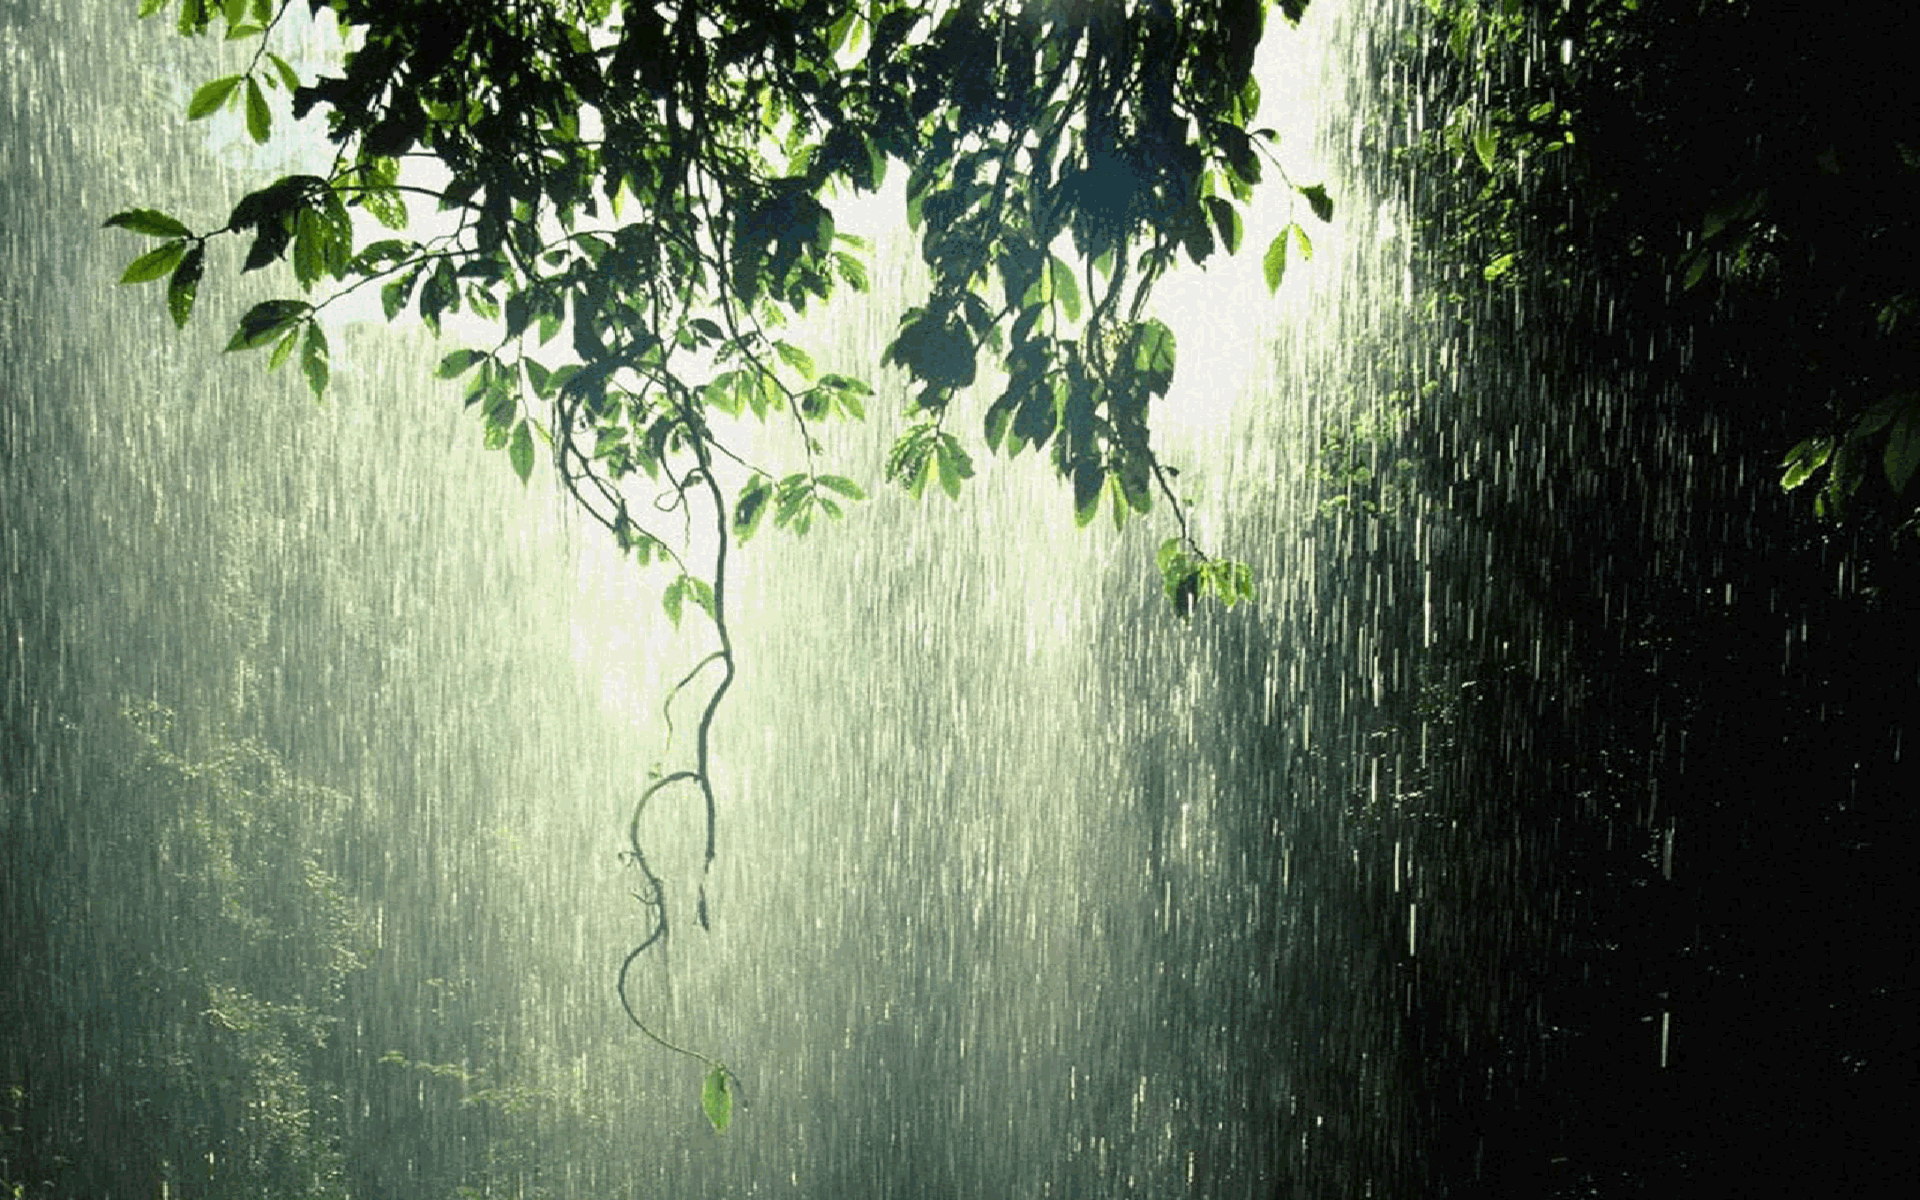 Hình nền trời mưa chất lượng cao đẹp nhất